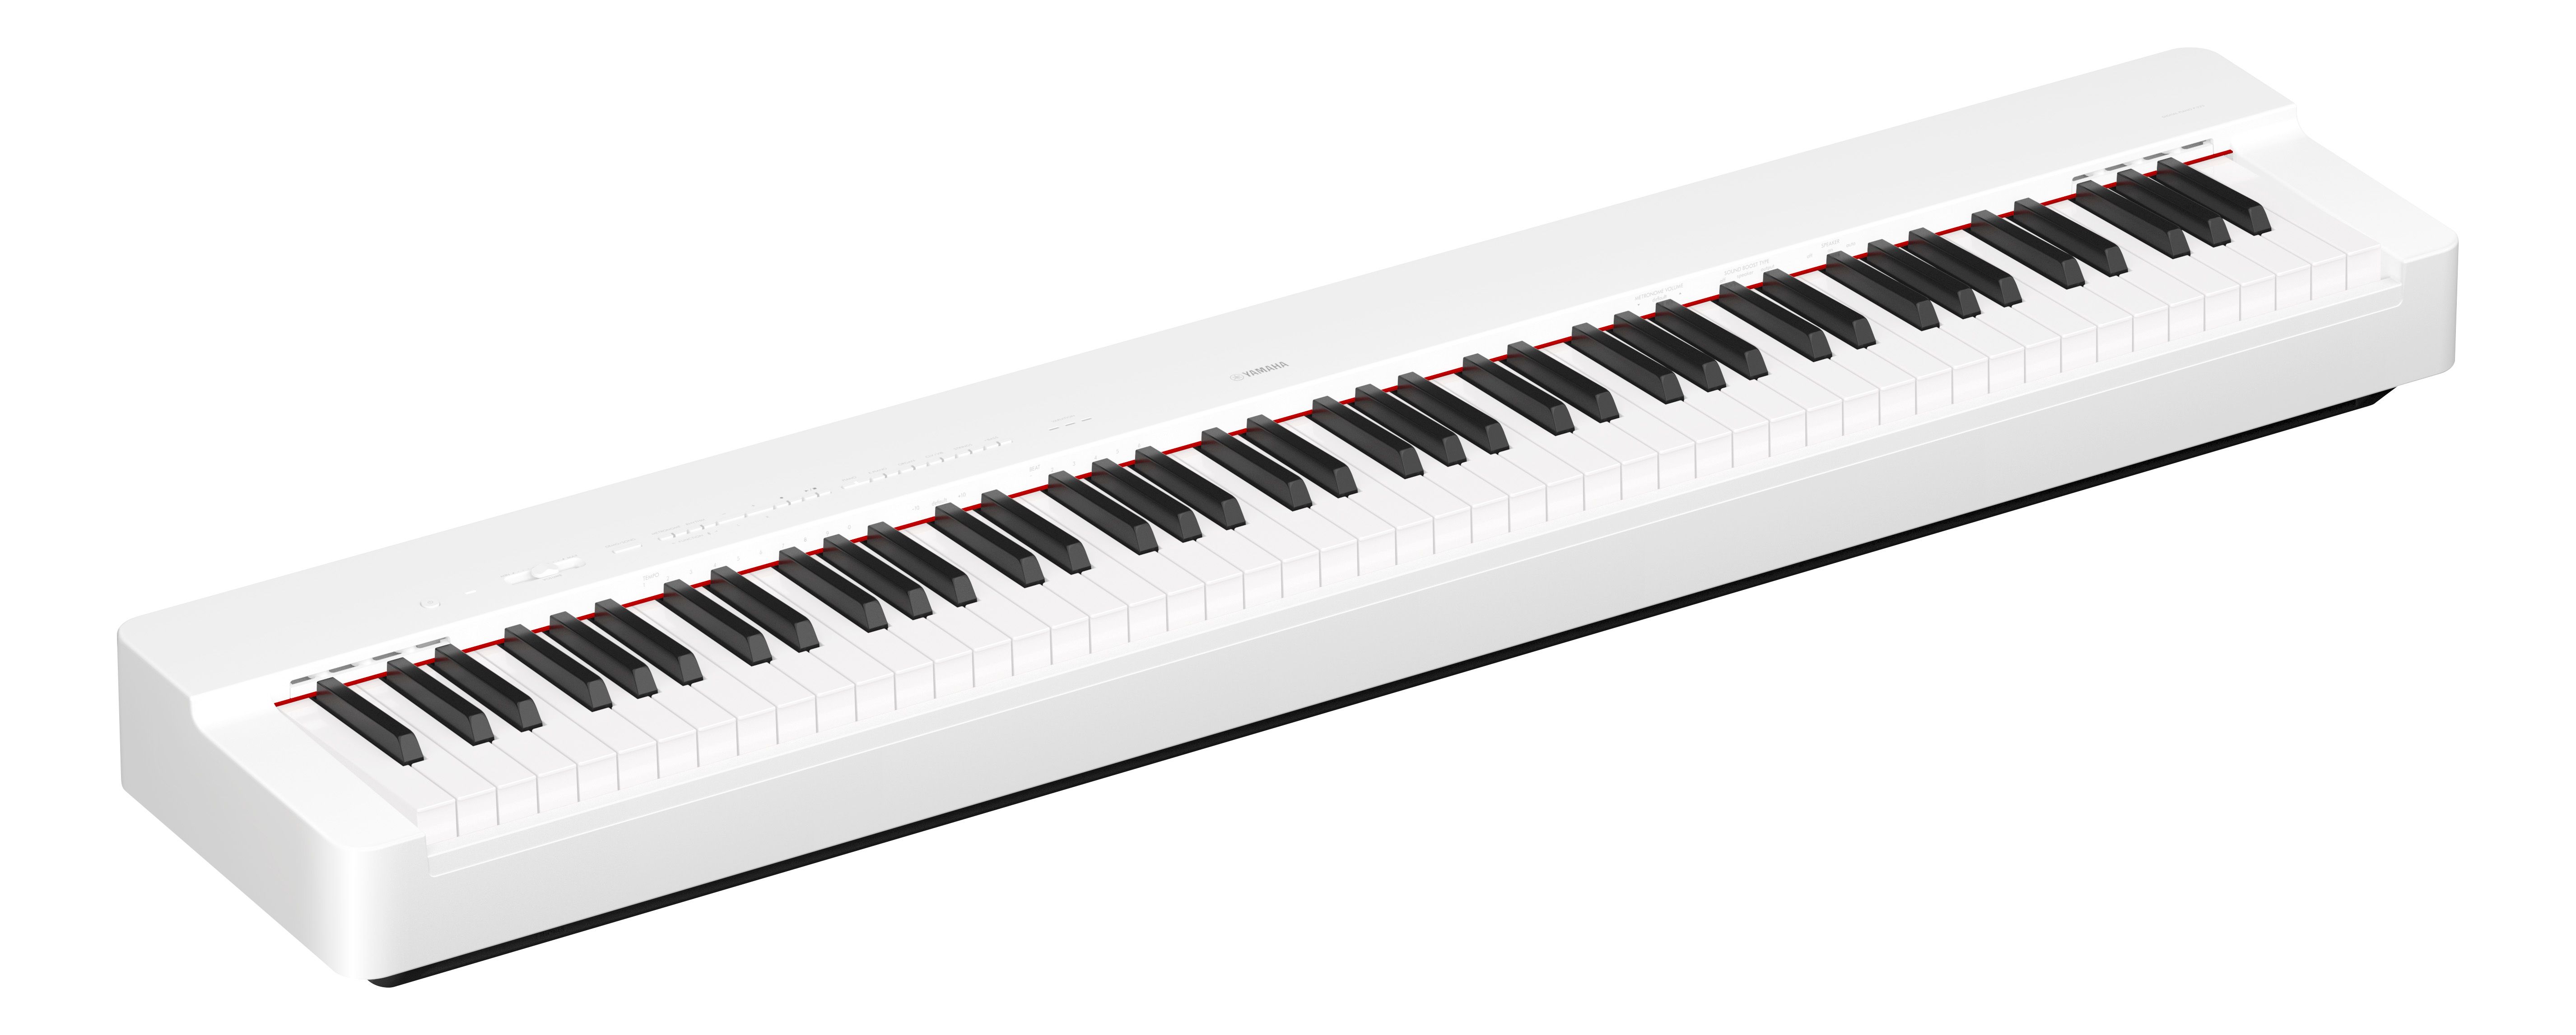 Yamaha P-225 White - Piano digital portatil - Variation 5